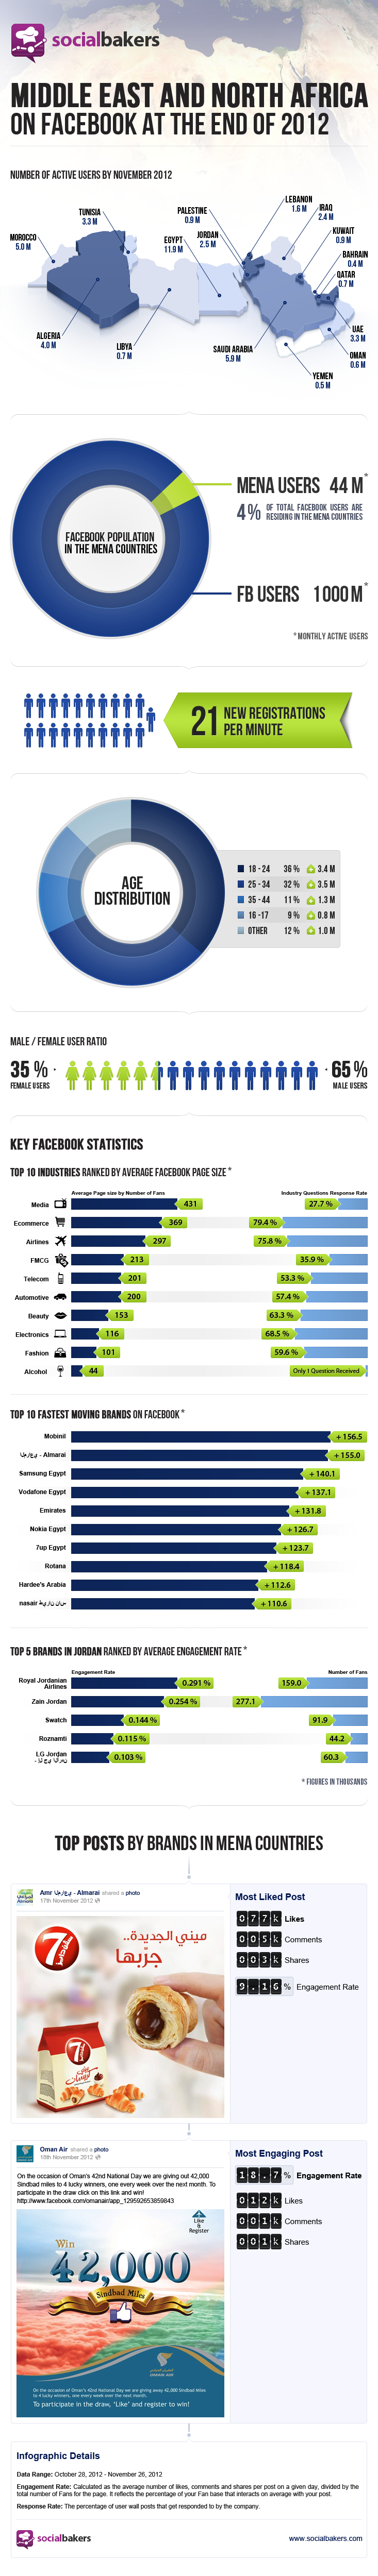 SocialBakers Social Media Infographic 2012